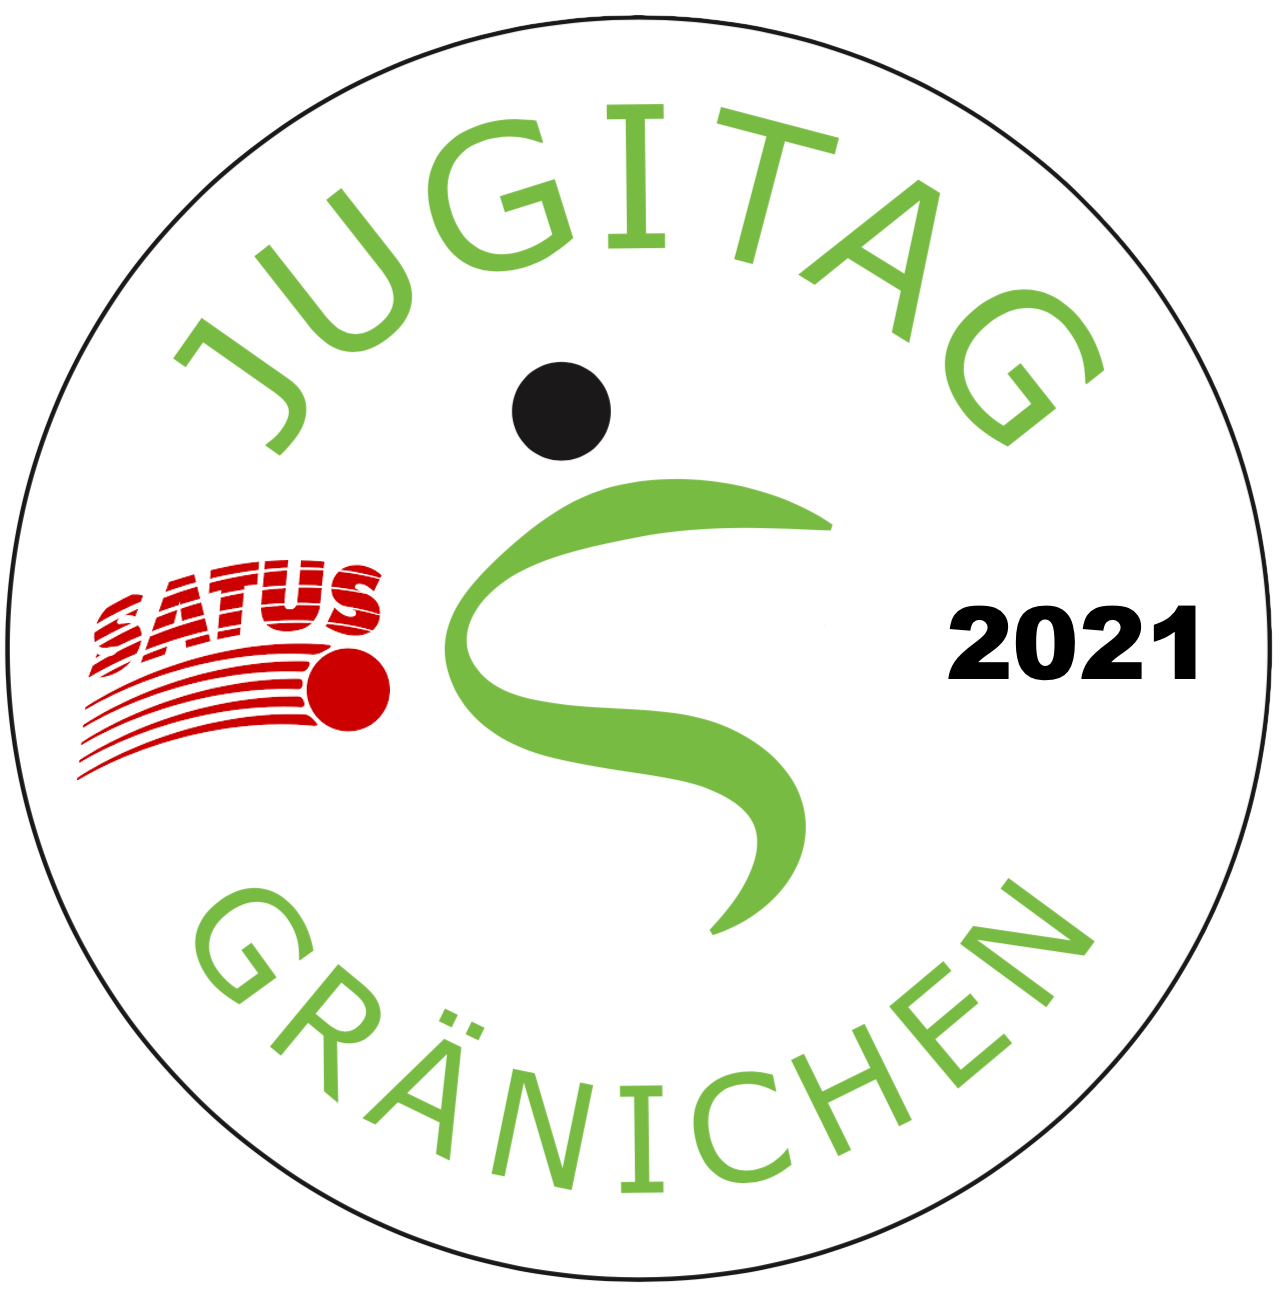 Jugitag vom 13. Juni 2021 in Gränichen - SATUS - Schweizer Arbeiter-, Turn- und Sportverband